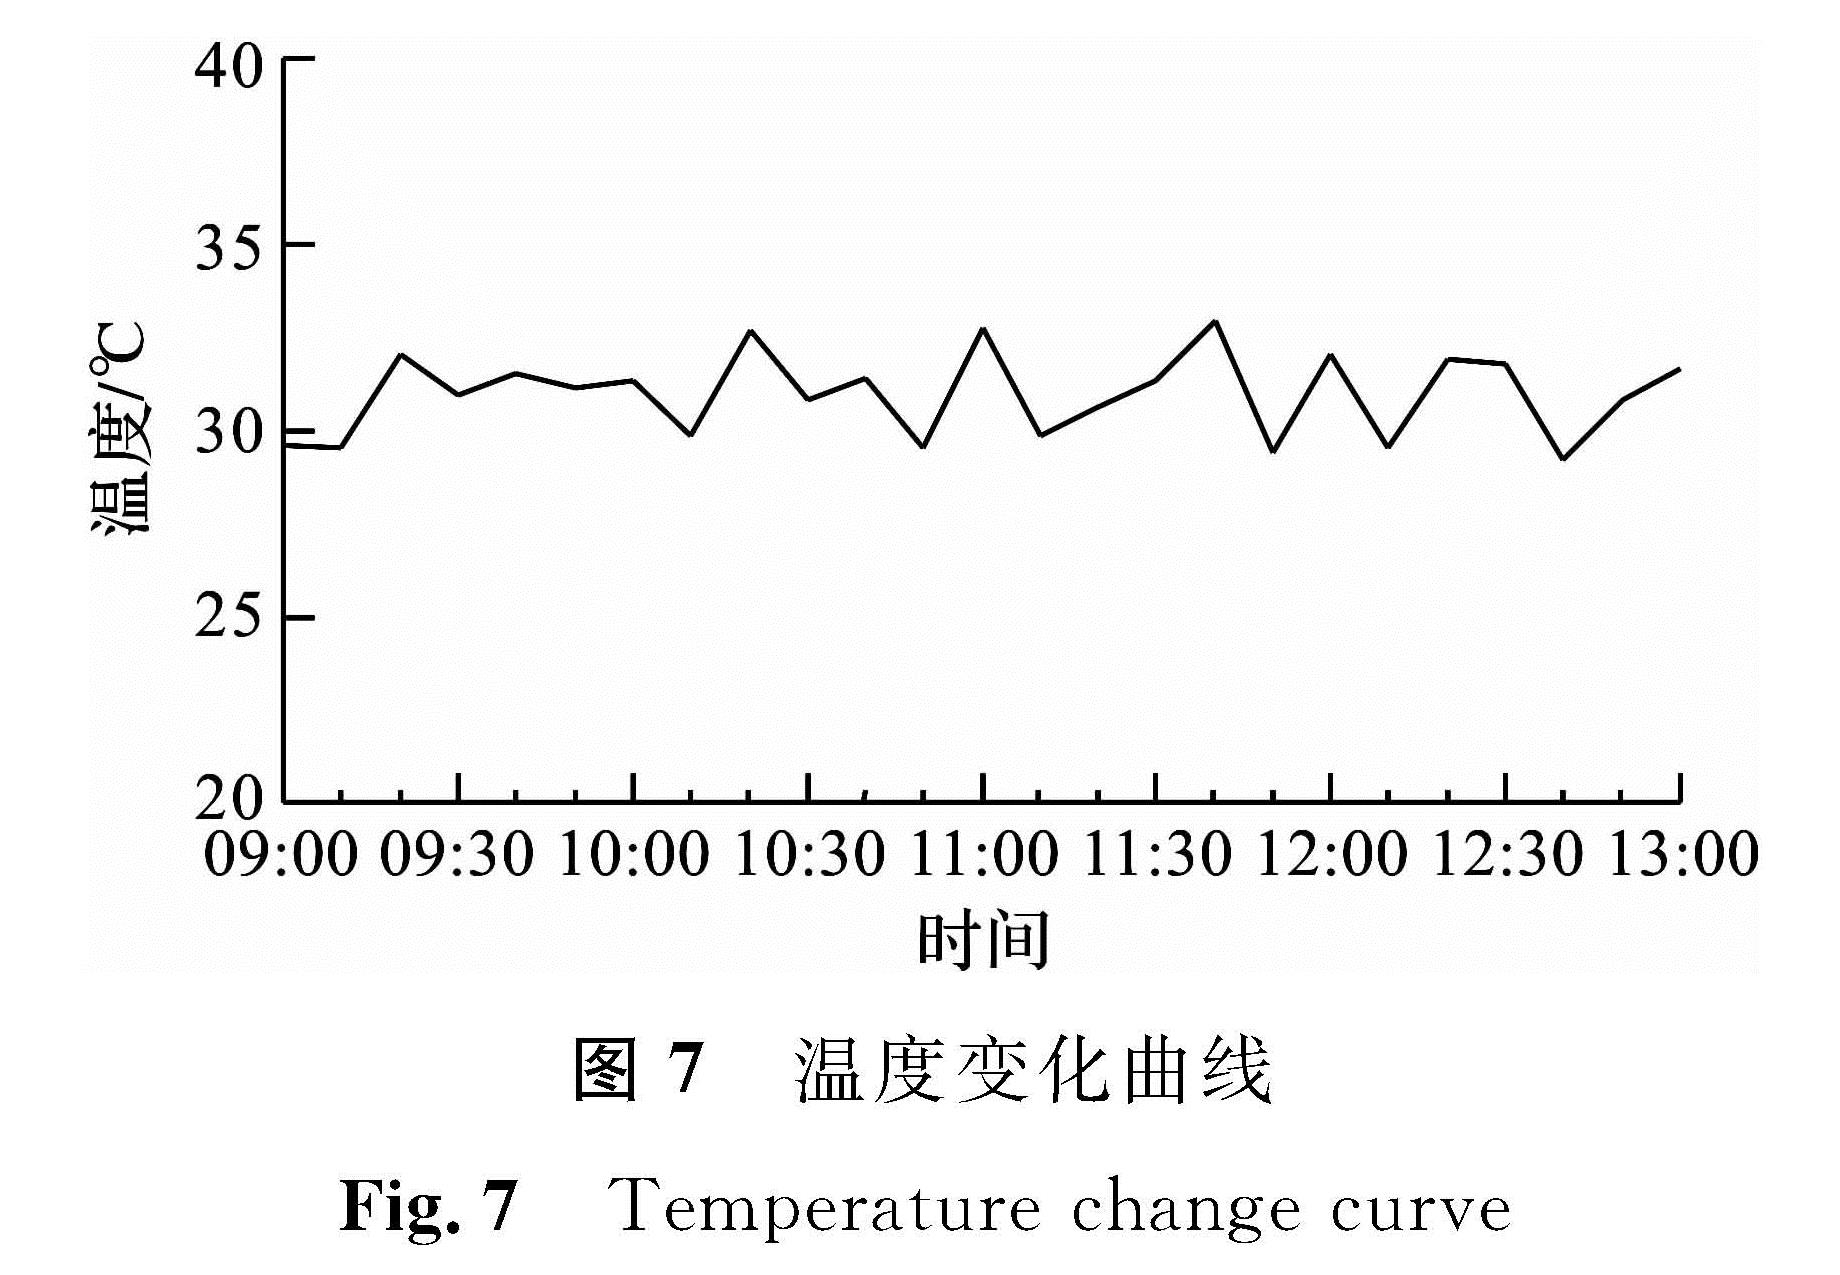 图7 温度变化曲线<br/>Fig.7 Temperature change curve